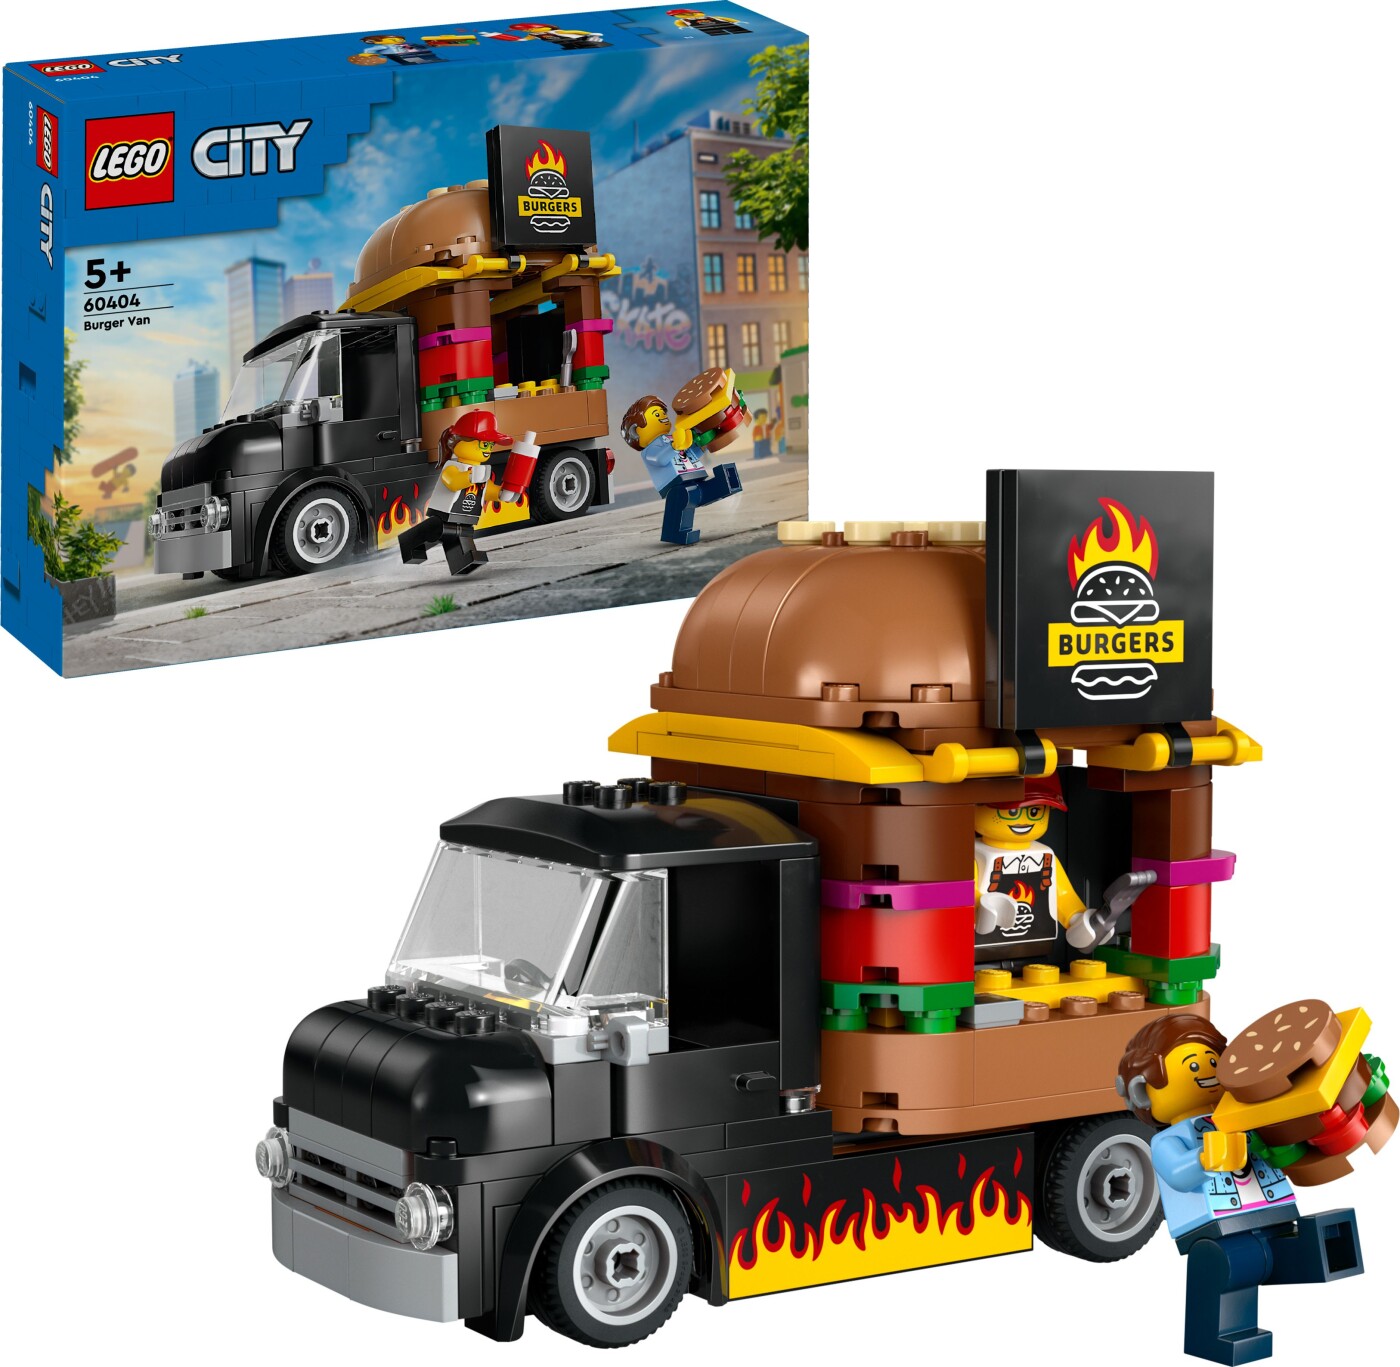 Billede af Lego City - Burgervogn - 60404